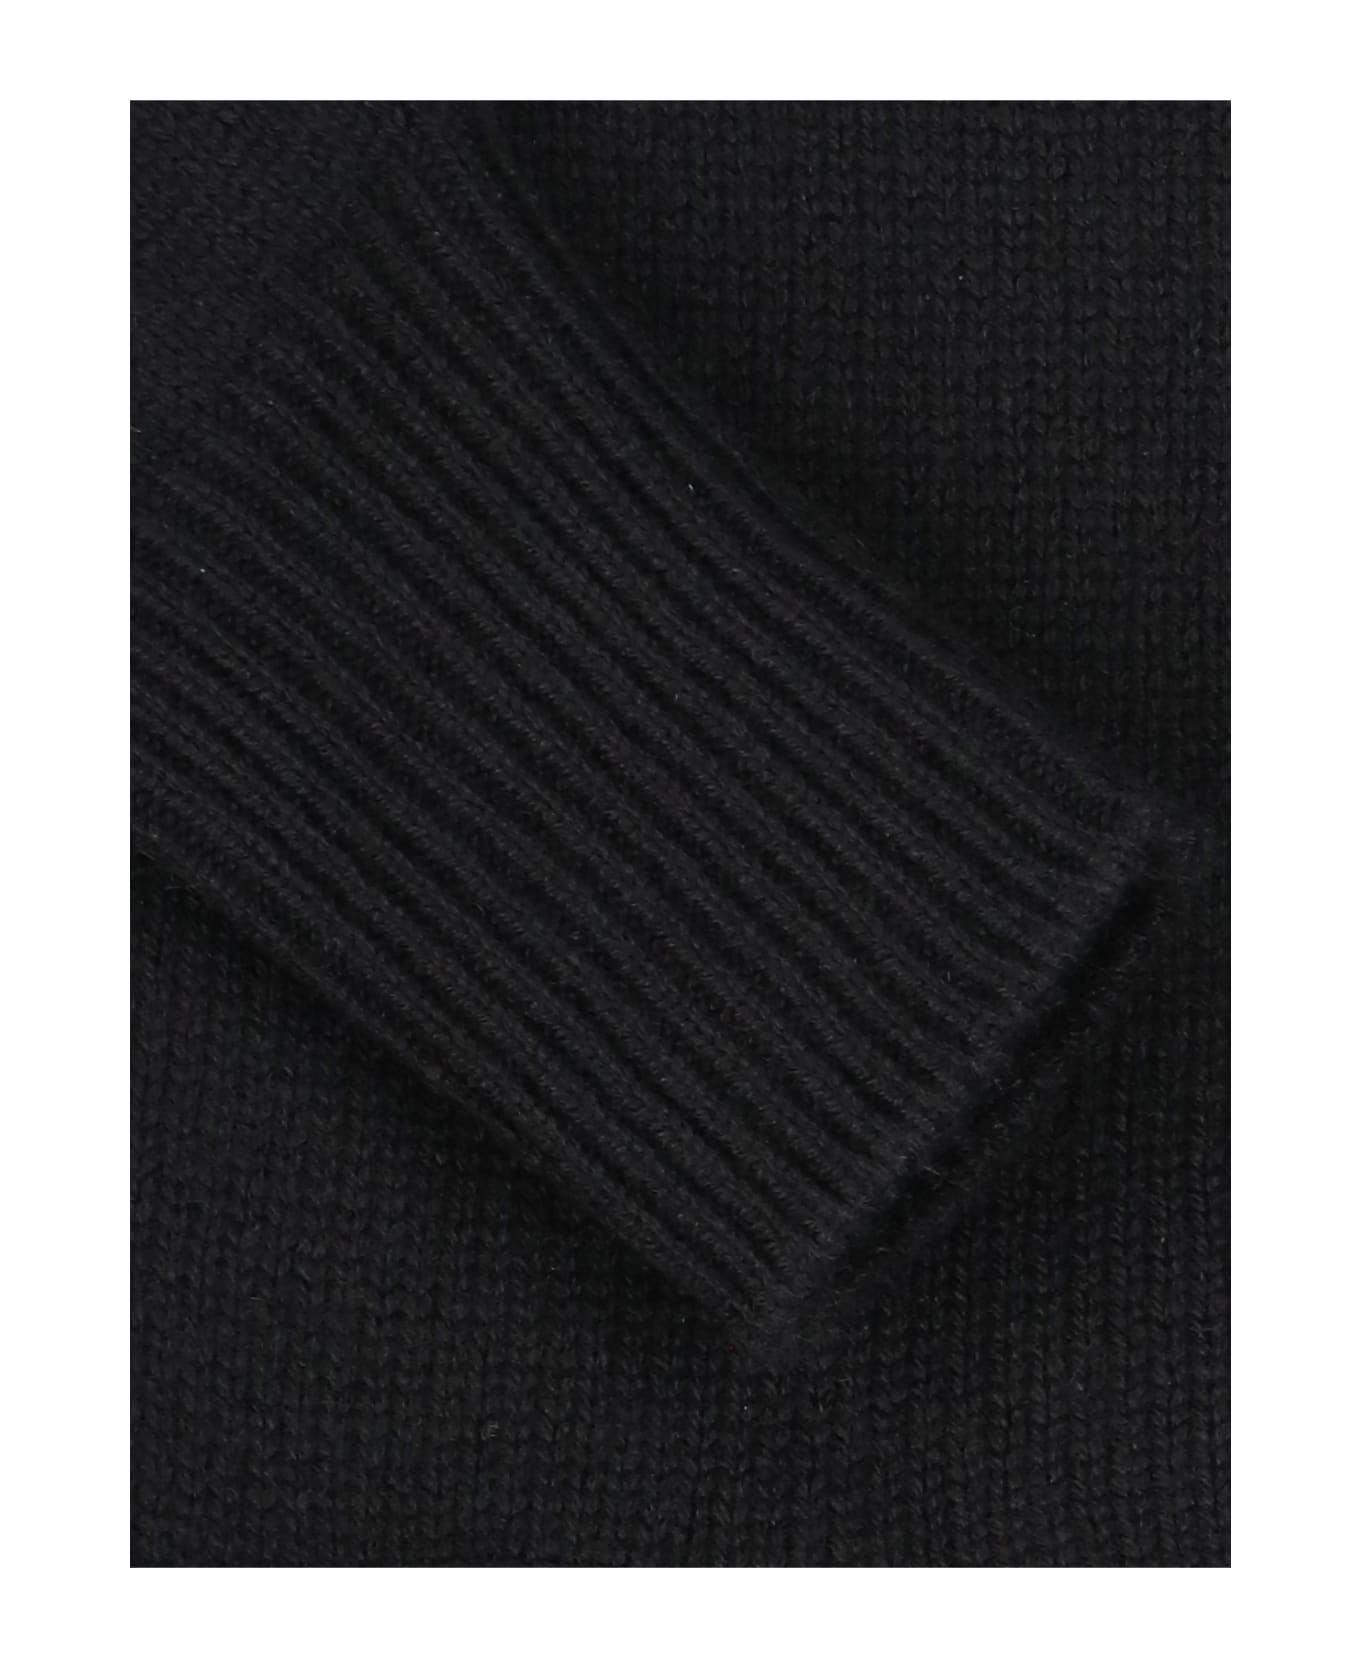 Jil Sander Crewneck Sweater - Black ニットウェア